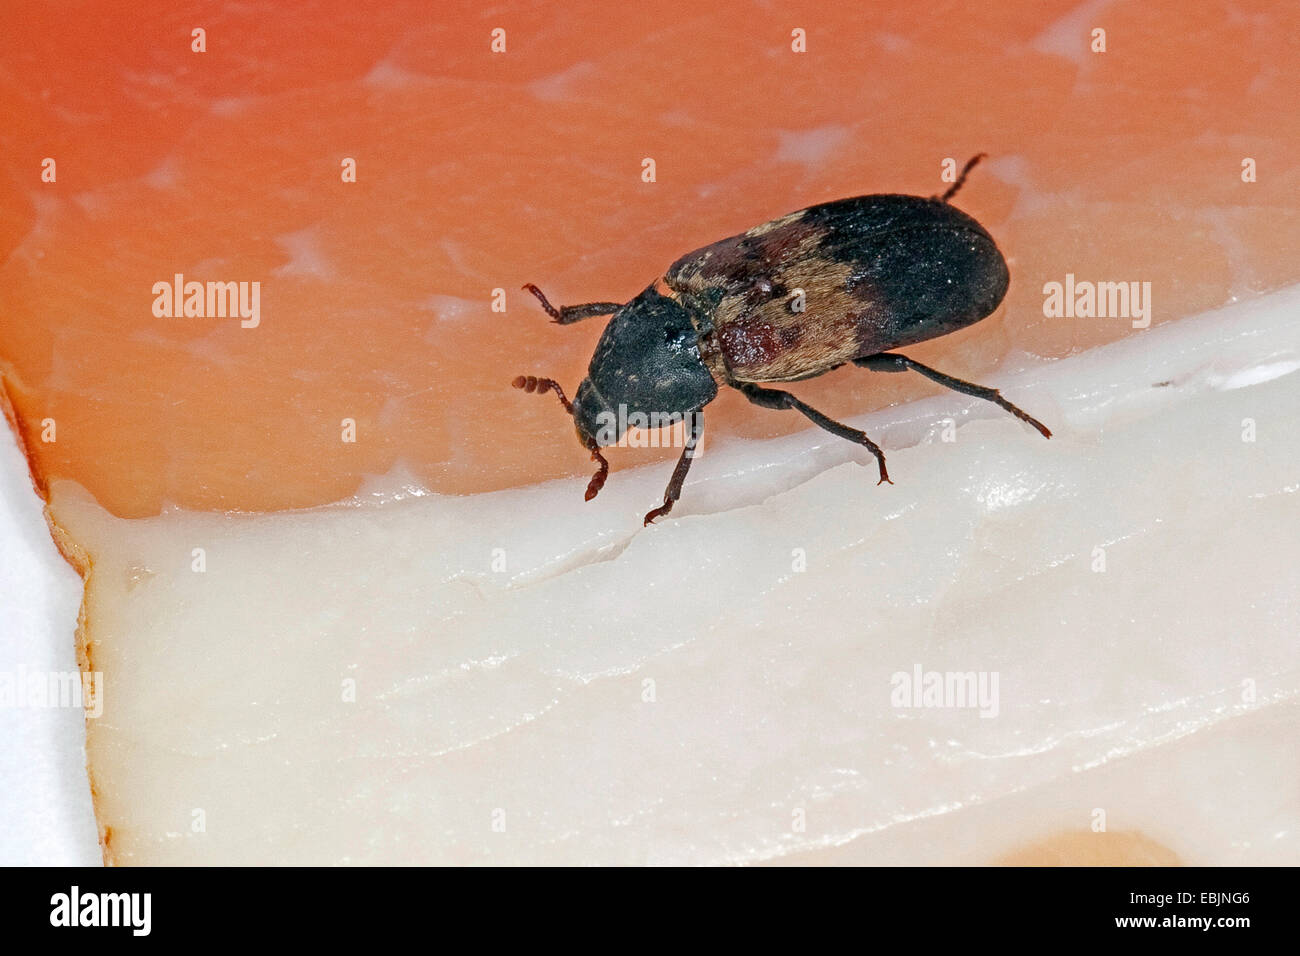 Speisekammer Käfer, gemeinsame Speisekammer Käfer, Speck Käfer (Dermestes Lardarius) gespeicherten Produkt Pest am Schinken, Deutschland Stockfoto